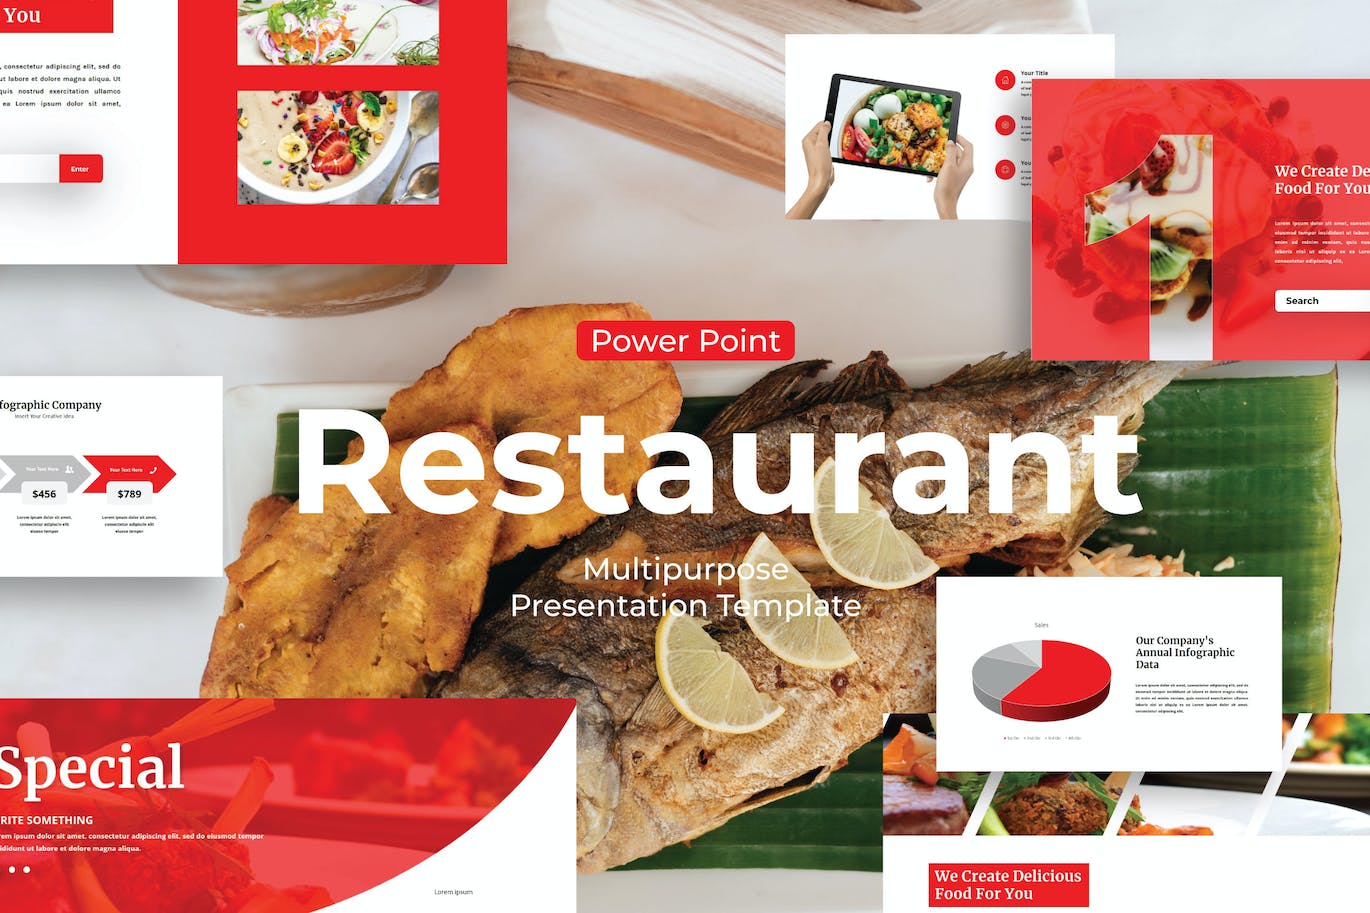 餐馆餐厅推广PPT幻灯片模板 Restaurant – PowerPoint Template 幻灯图表 第1张